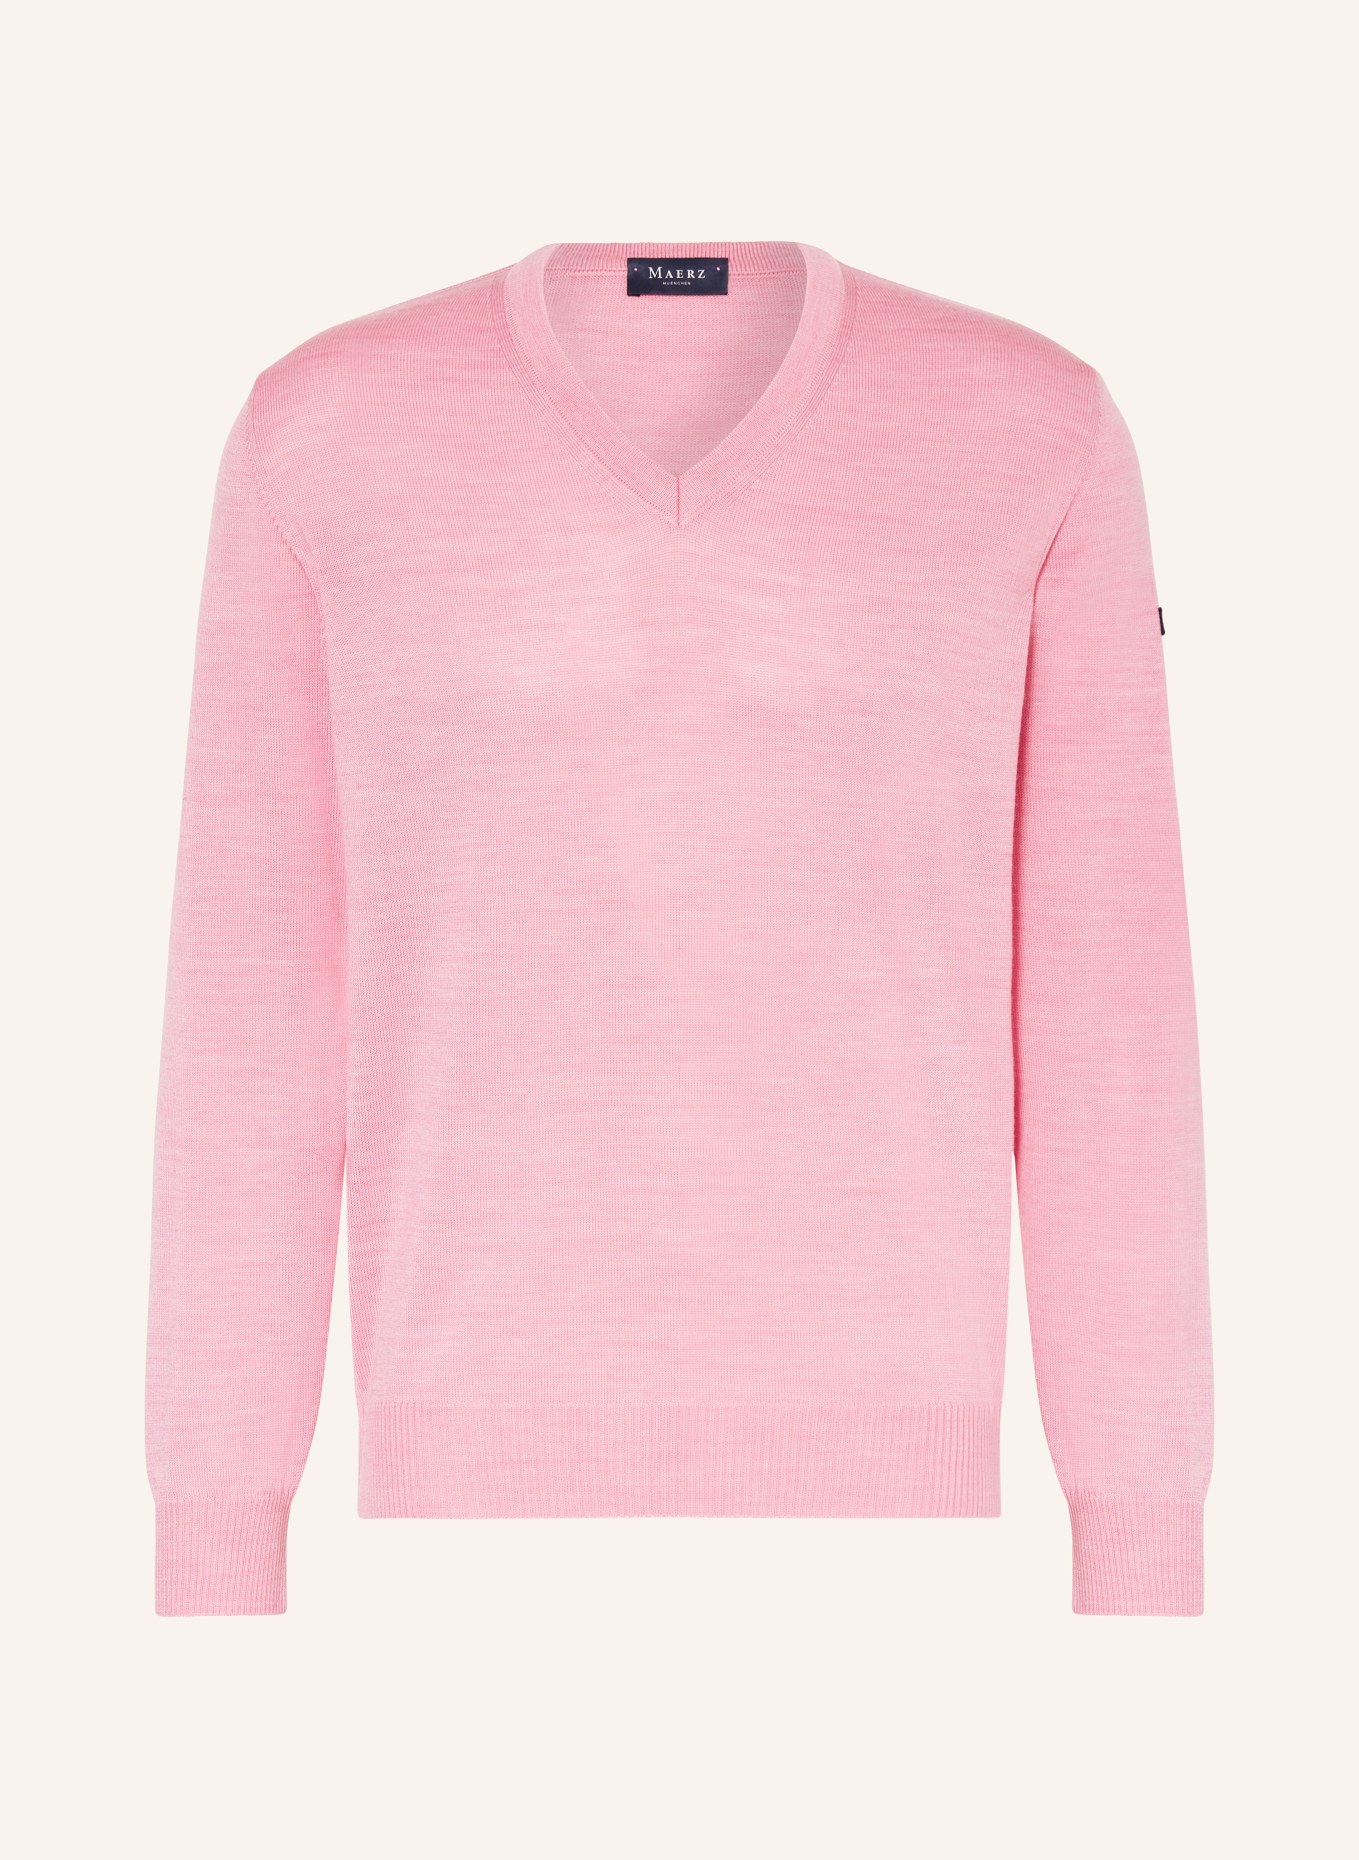 MAERZ MUENCHEN Pullover, Farbe: ROSA (Bild 1)